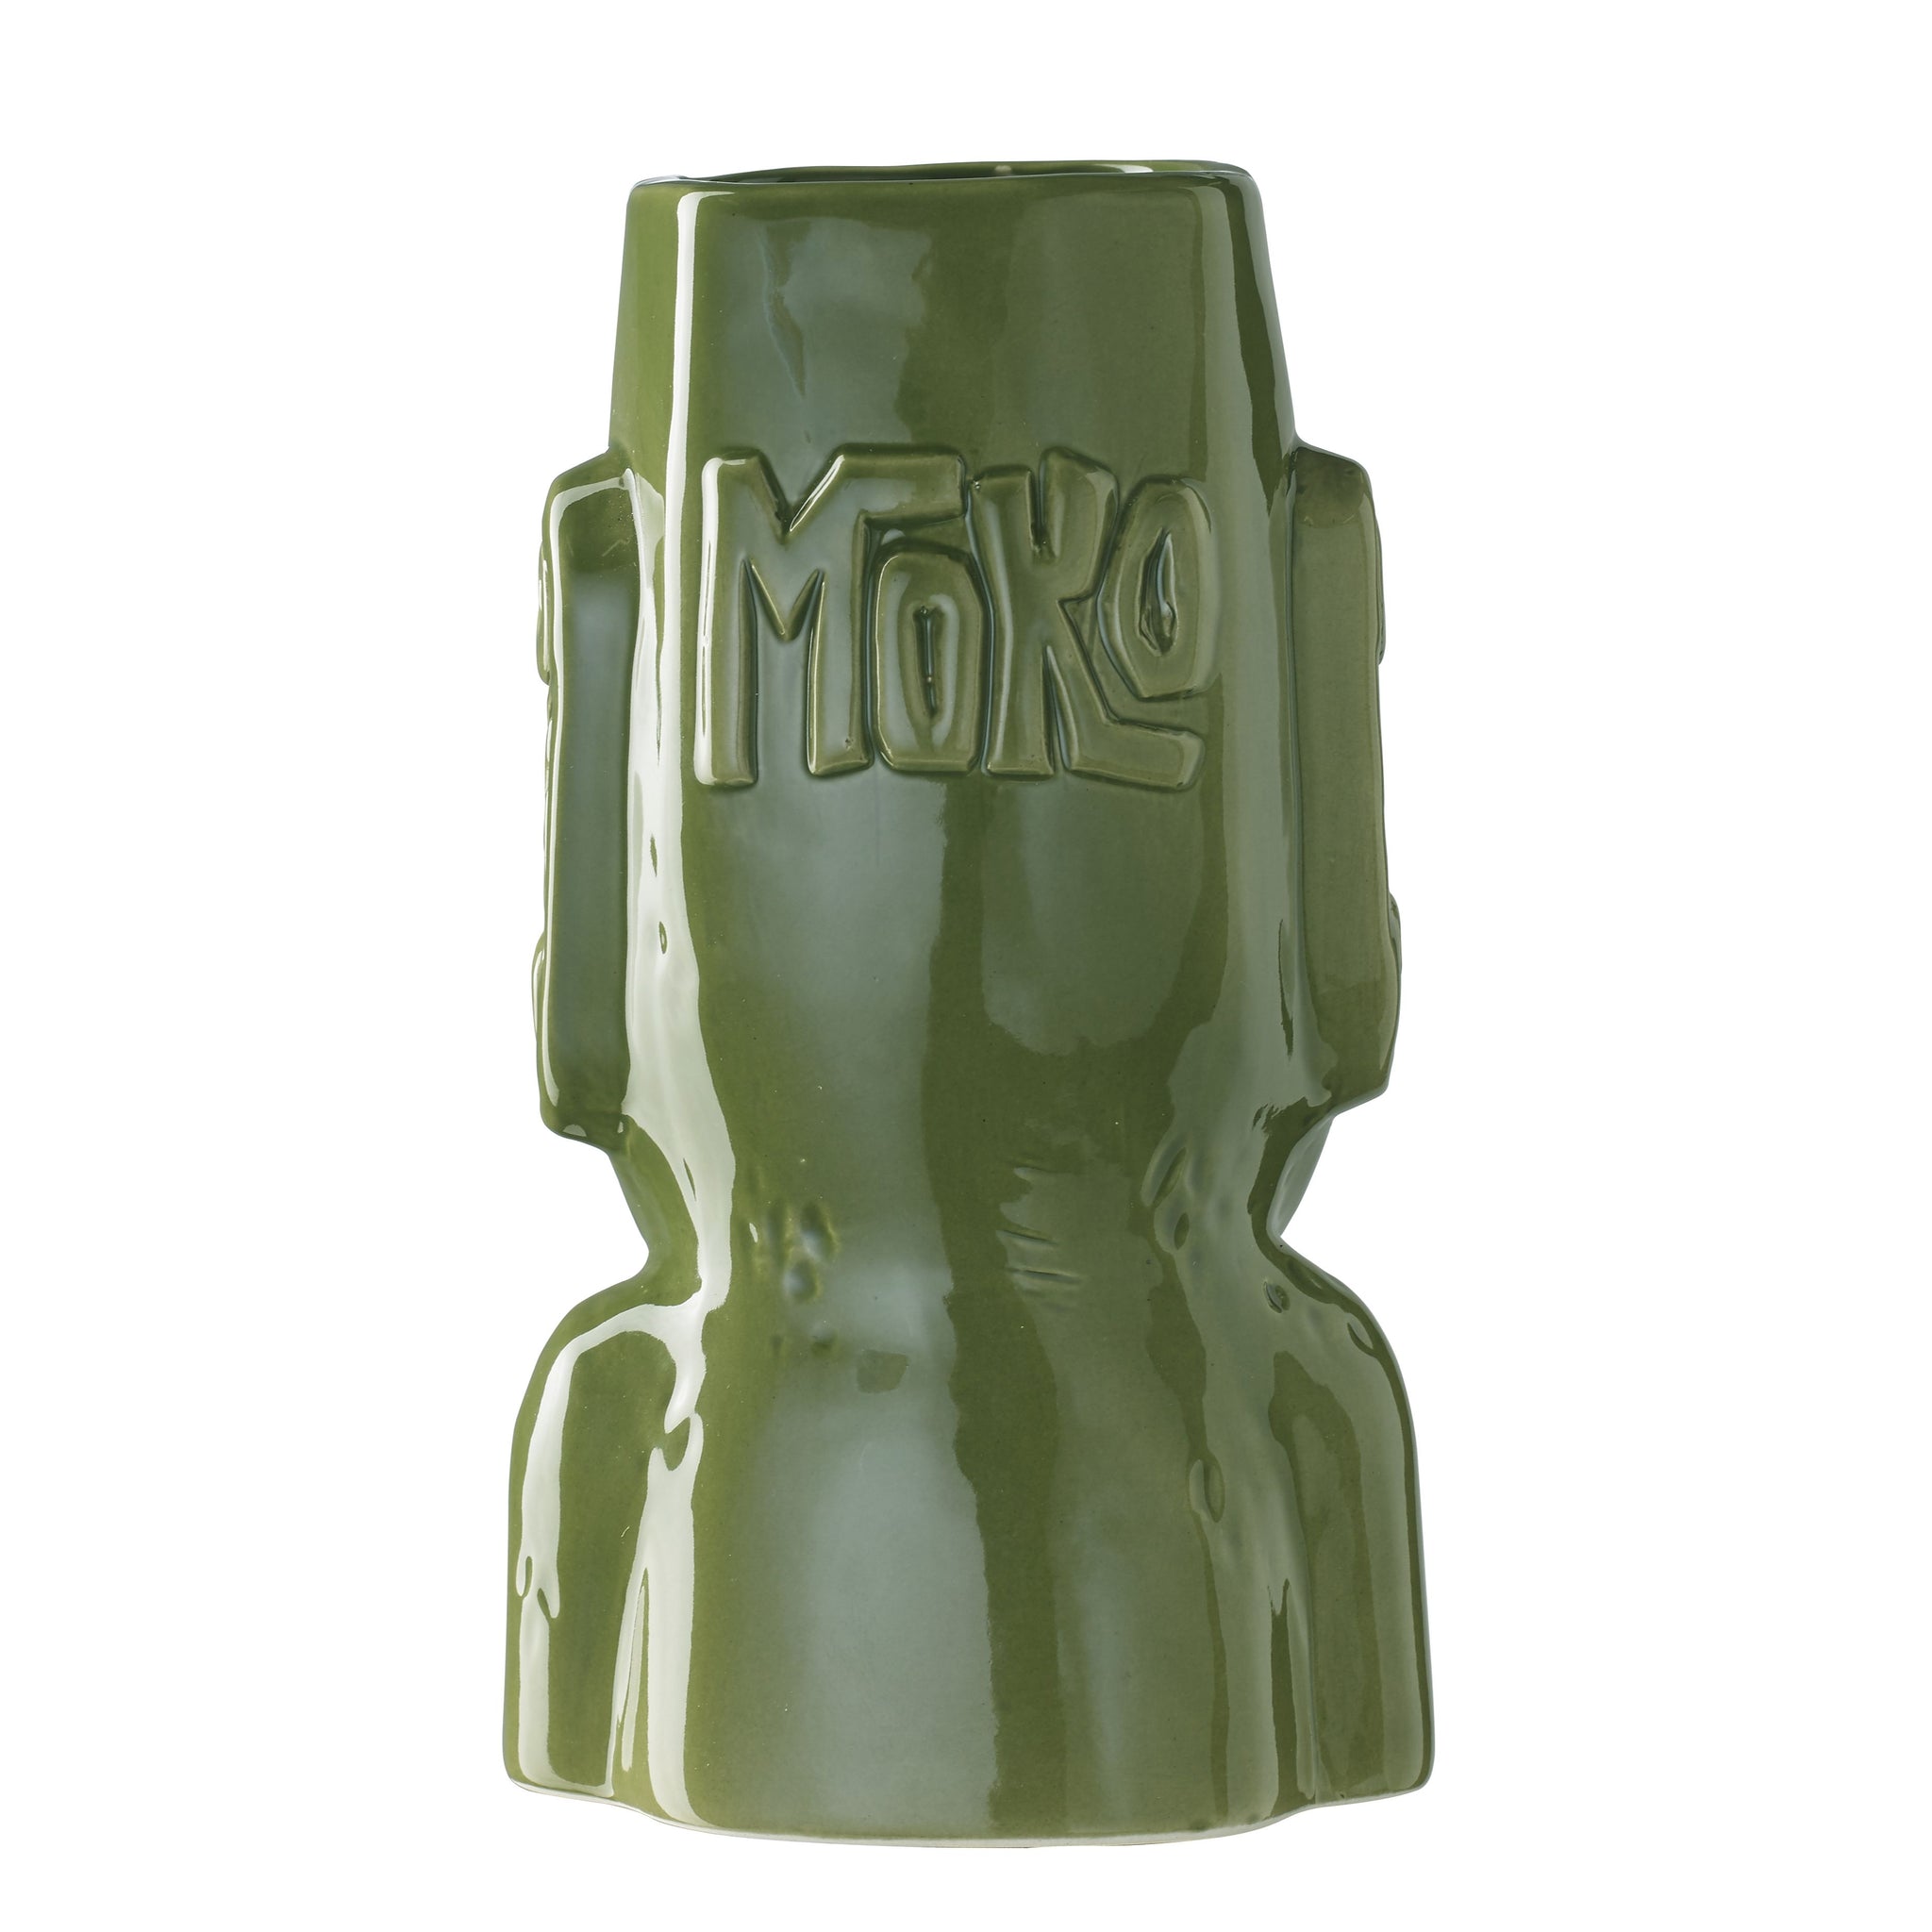 Moko Tiki Tropical Cocktail Mug 50cl